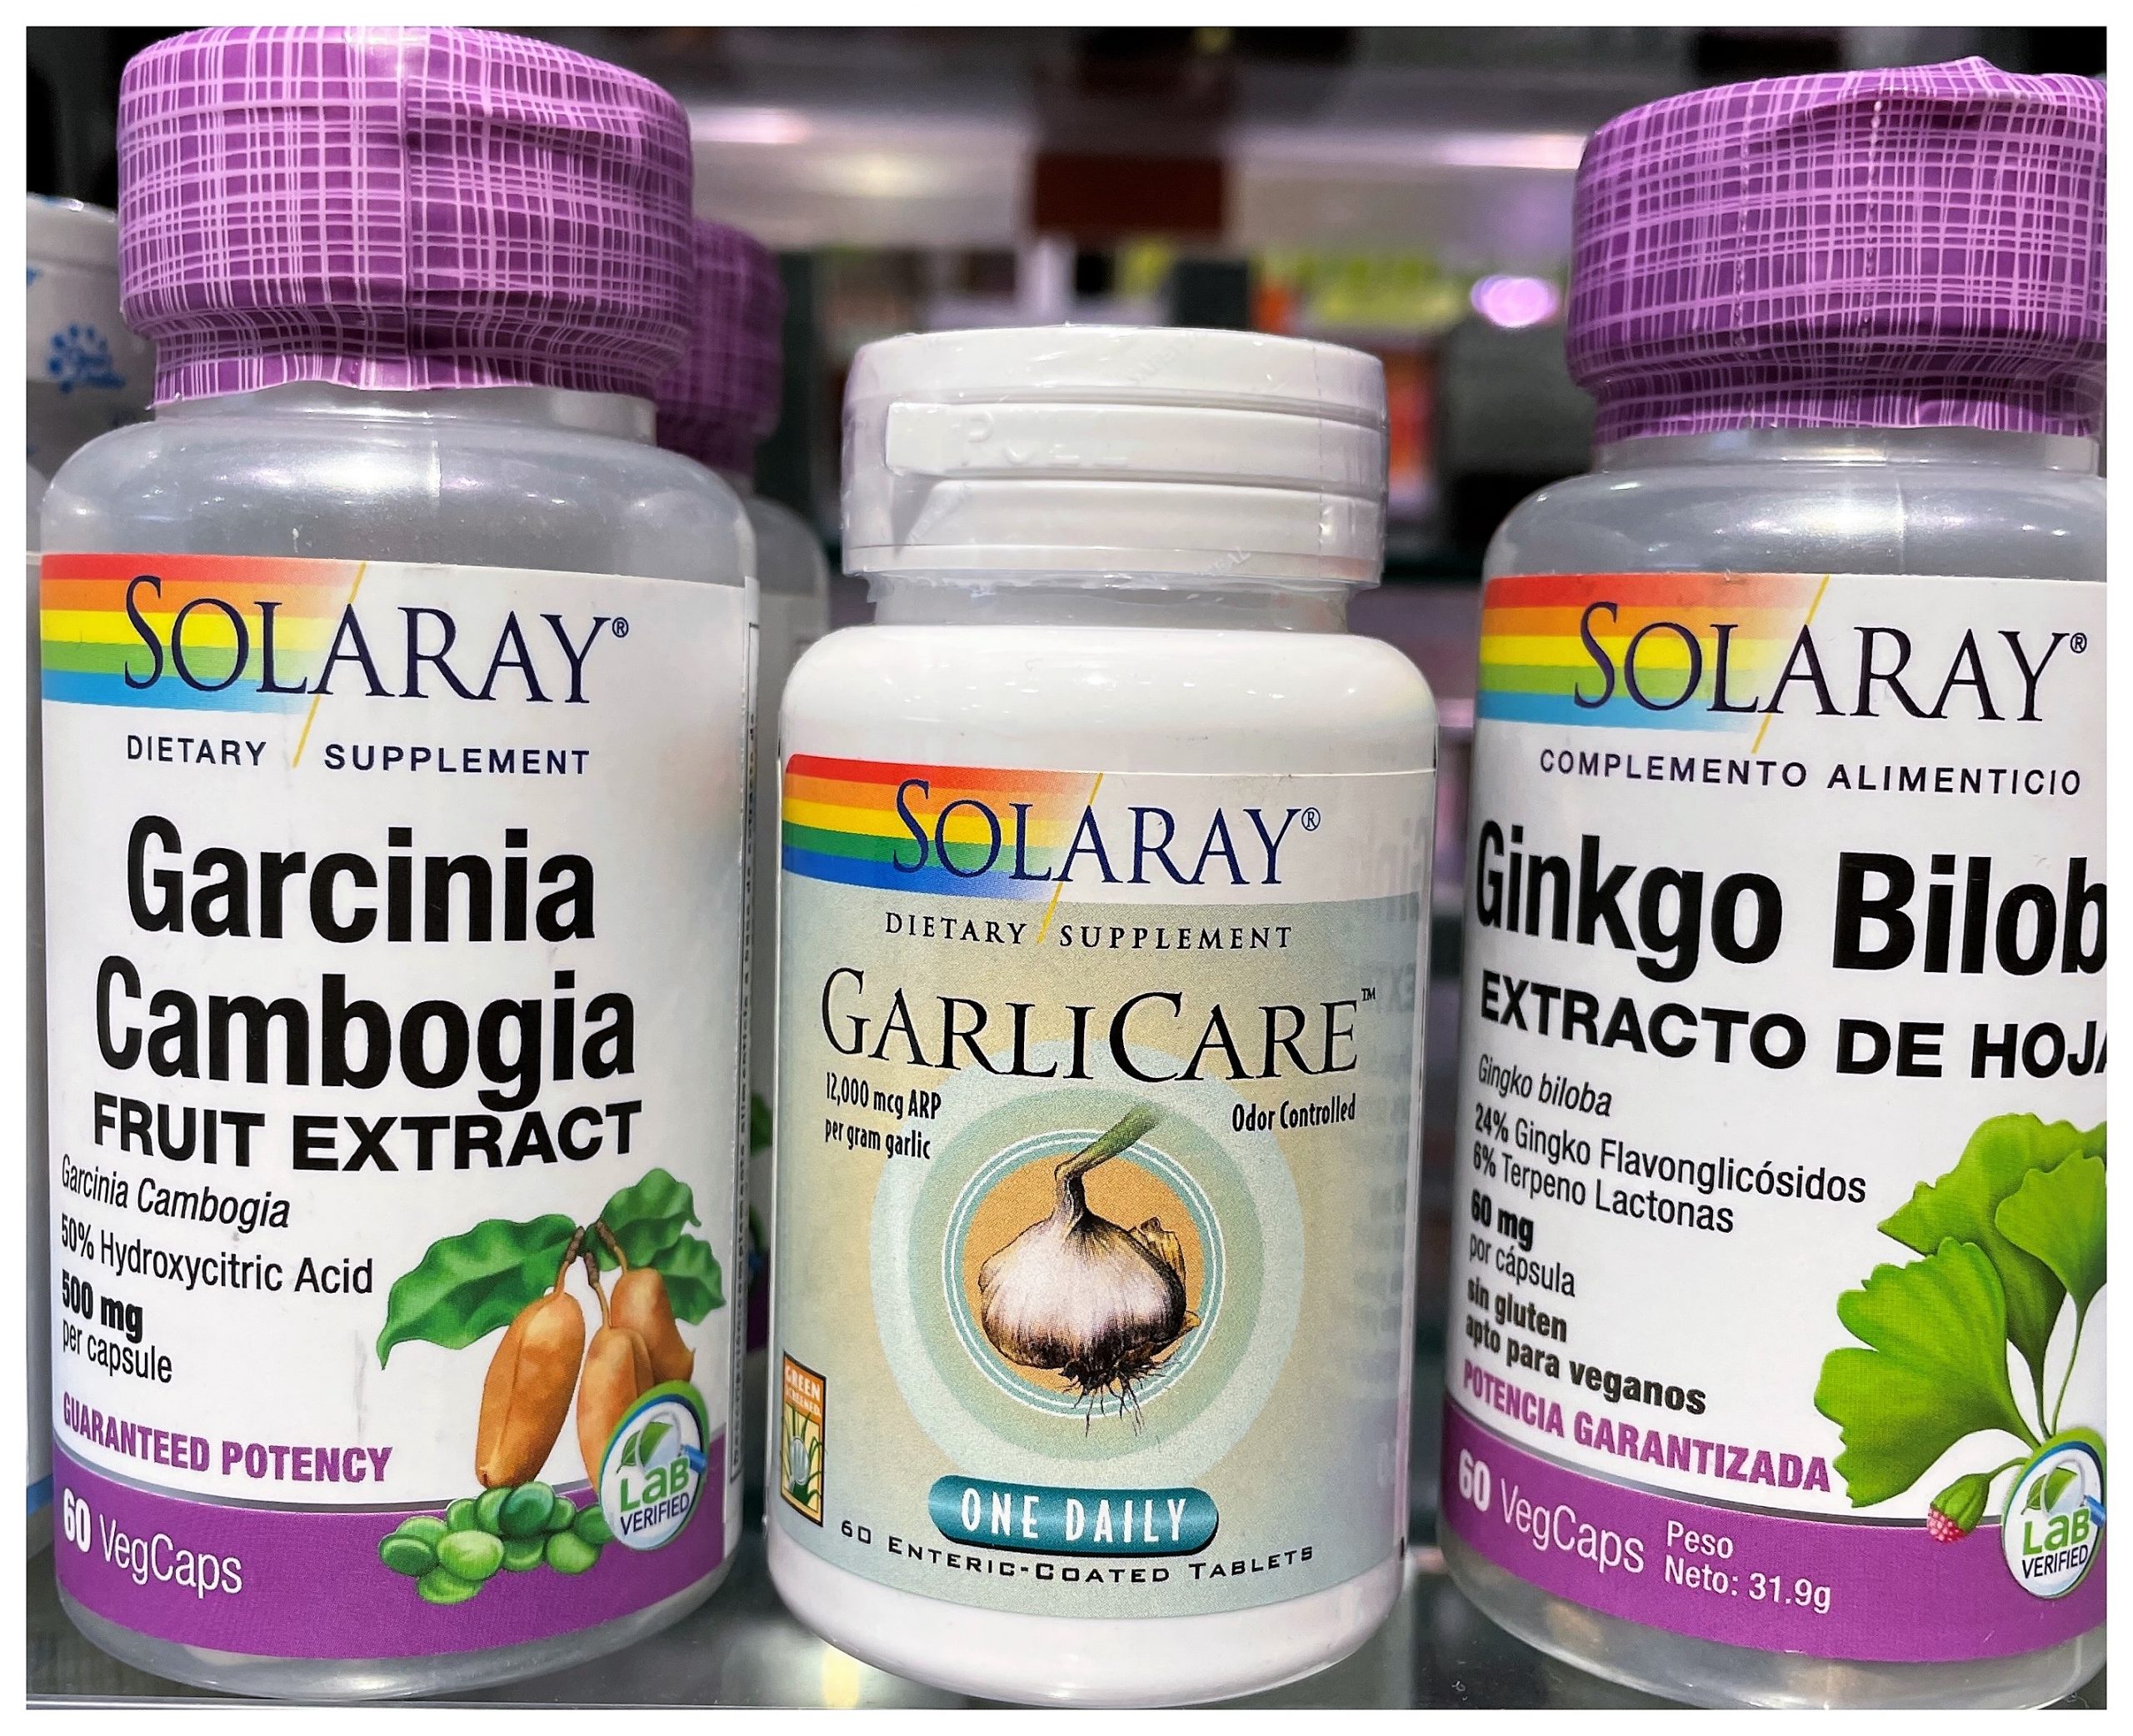 Comprar SOLARAY GARCINIA CAMBOGIA 500MG en Gran Farmacia Andorra Online Complemento alimenticio a base de extracto de Garcinia cambogia estandarizado al 50% de ácido hidroxicitrico.